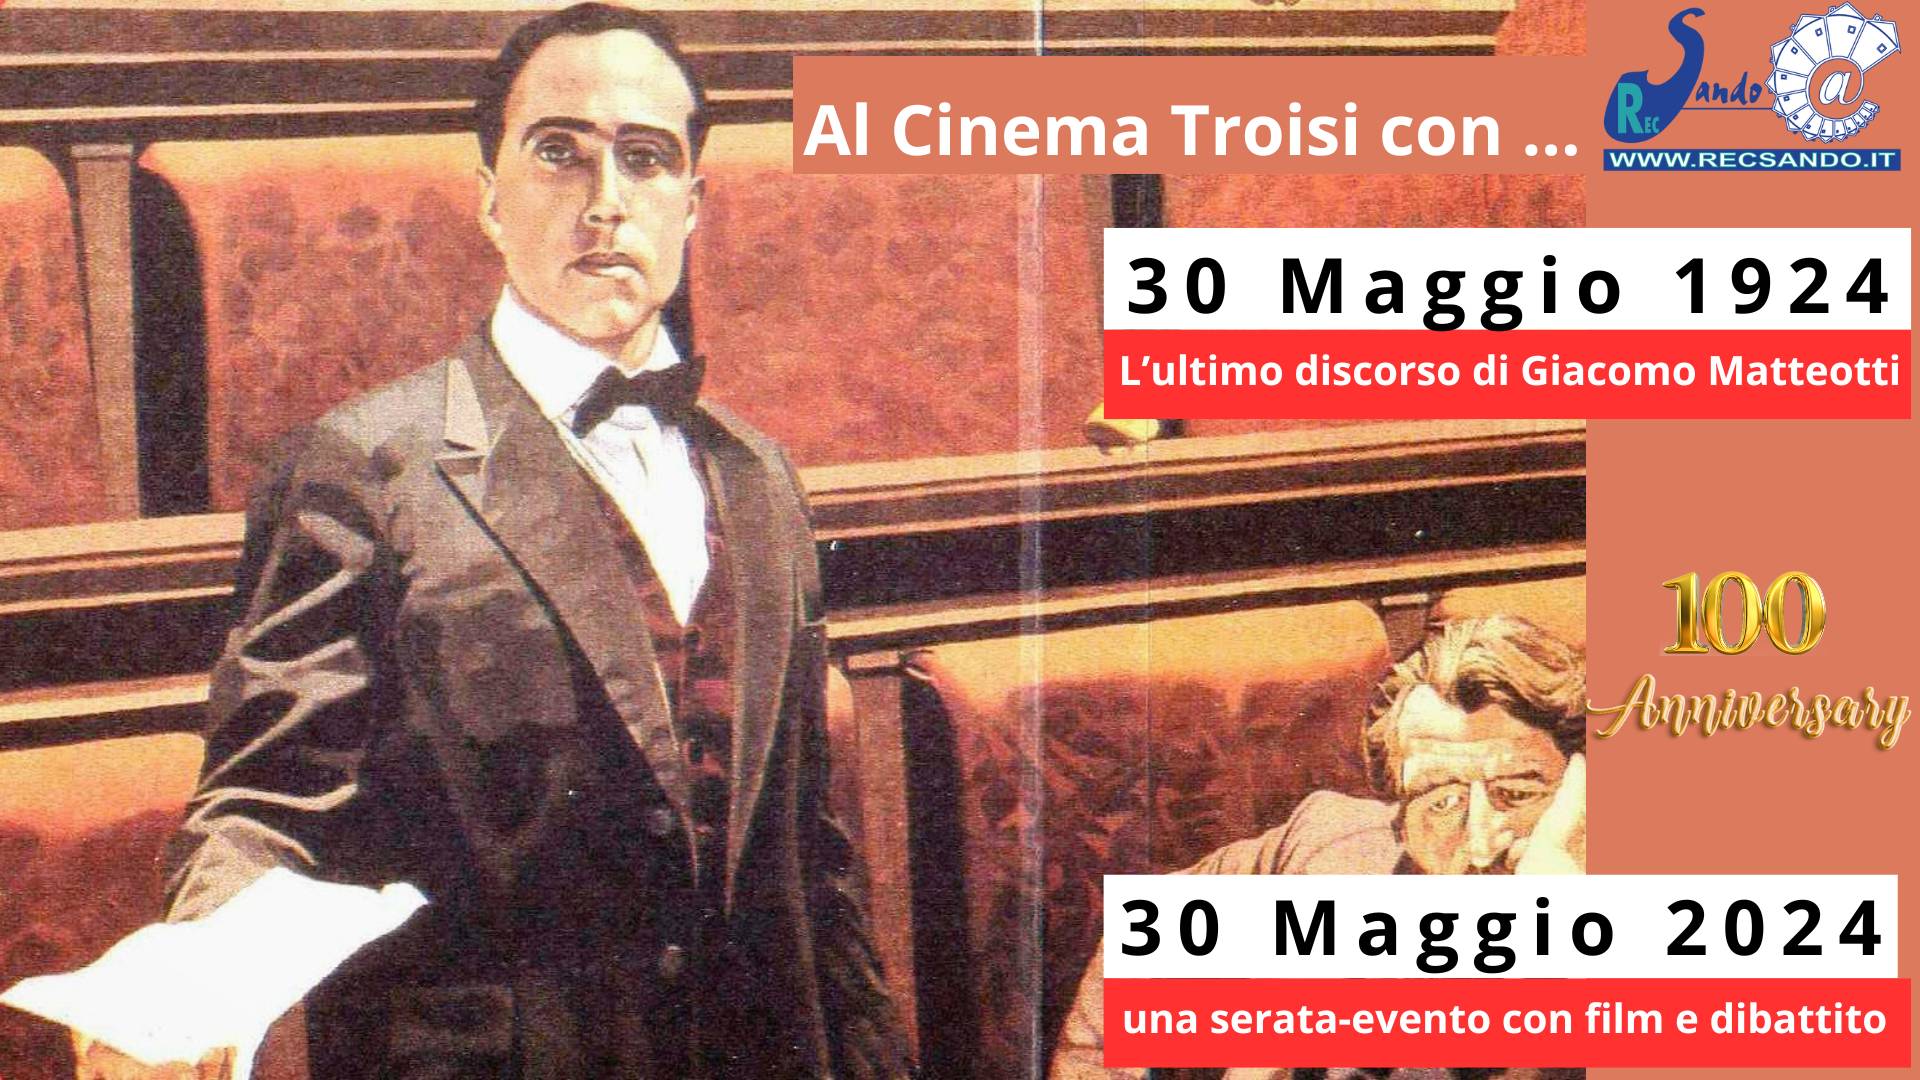 30 Maggio 1924 - 30 Maggio 2024 - Anniversario discorso Matteotti